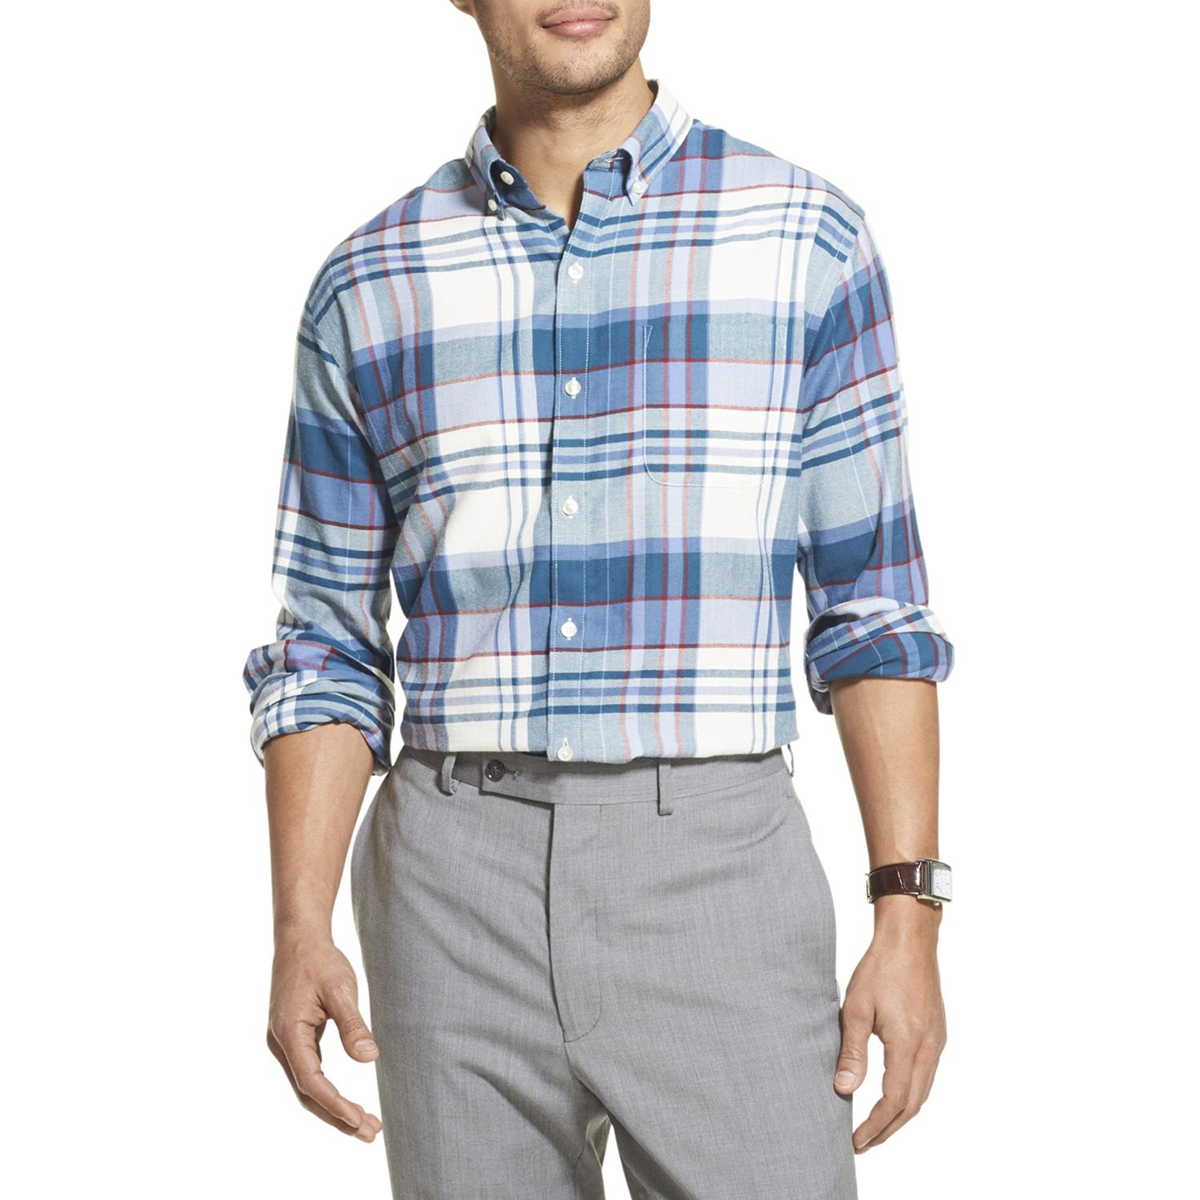 Van Heusen Men's Long-Sleeve Flex Plaid Button Down Shirt - Blue, XL